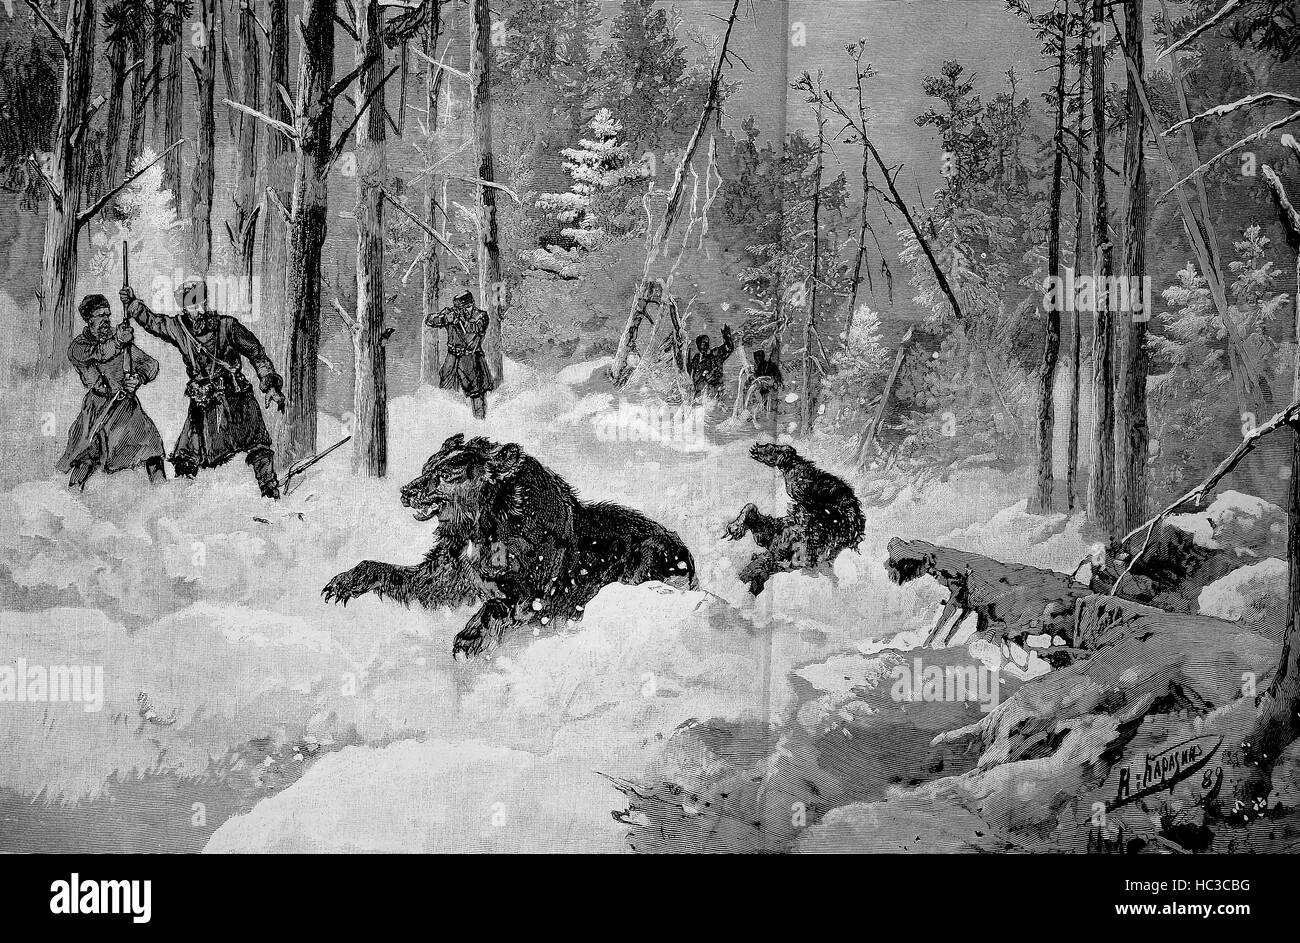 Hunter à la chasse aux ours en Russie, illustration historique, gravure sur bois, 1890 Banque D'Images